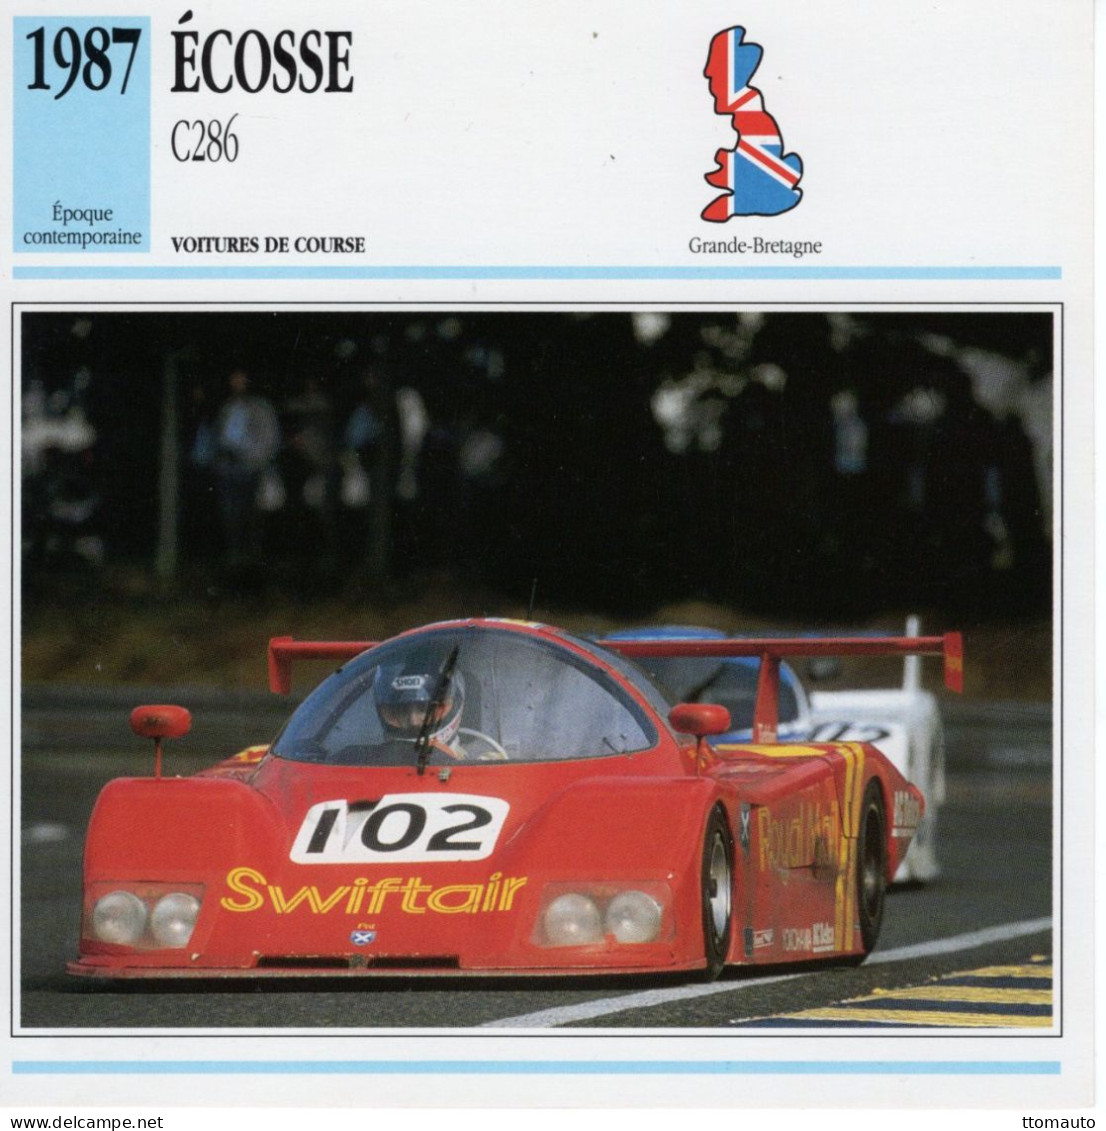 Fiche  -  Voiture De Course Le Mans  -  Écosse C286 (1987)  - Pilotes: Duez/Mallock/Leslie -  Carte De Collection - Voitures